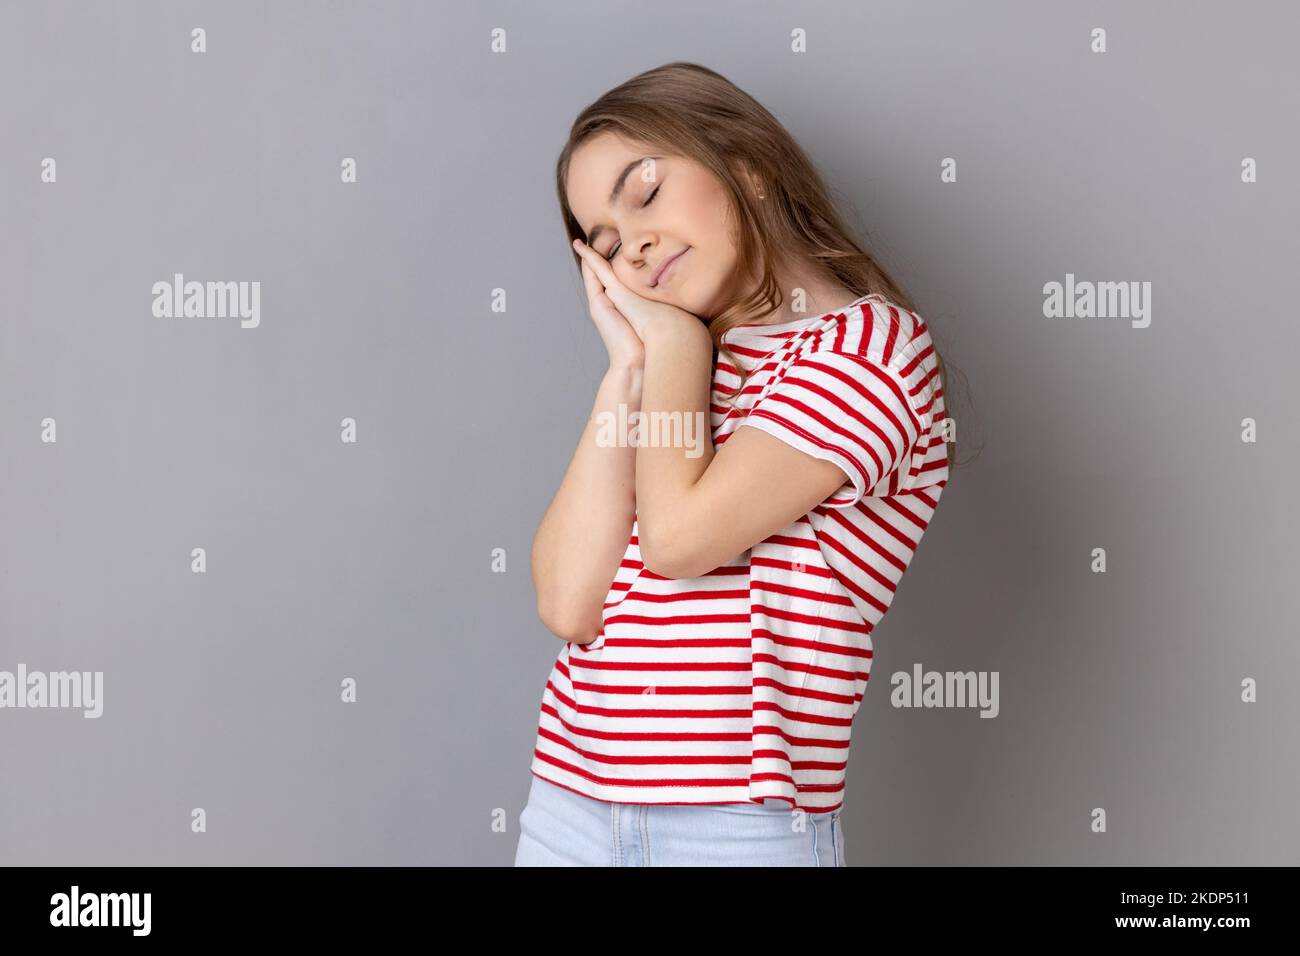 Ich brauche Ruhe. Porträt eines kleinen Mädchens in gestreiftem T-Shirt, das gähnend und den Mund mit der Hand bedeckt, sich erschöpft fühlt, Schlafmangel. Innenaufnahme des Studios isoliert auf grauem Hintergrund. Stockfoto